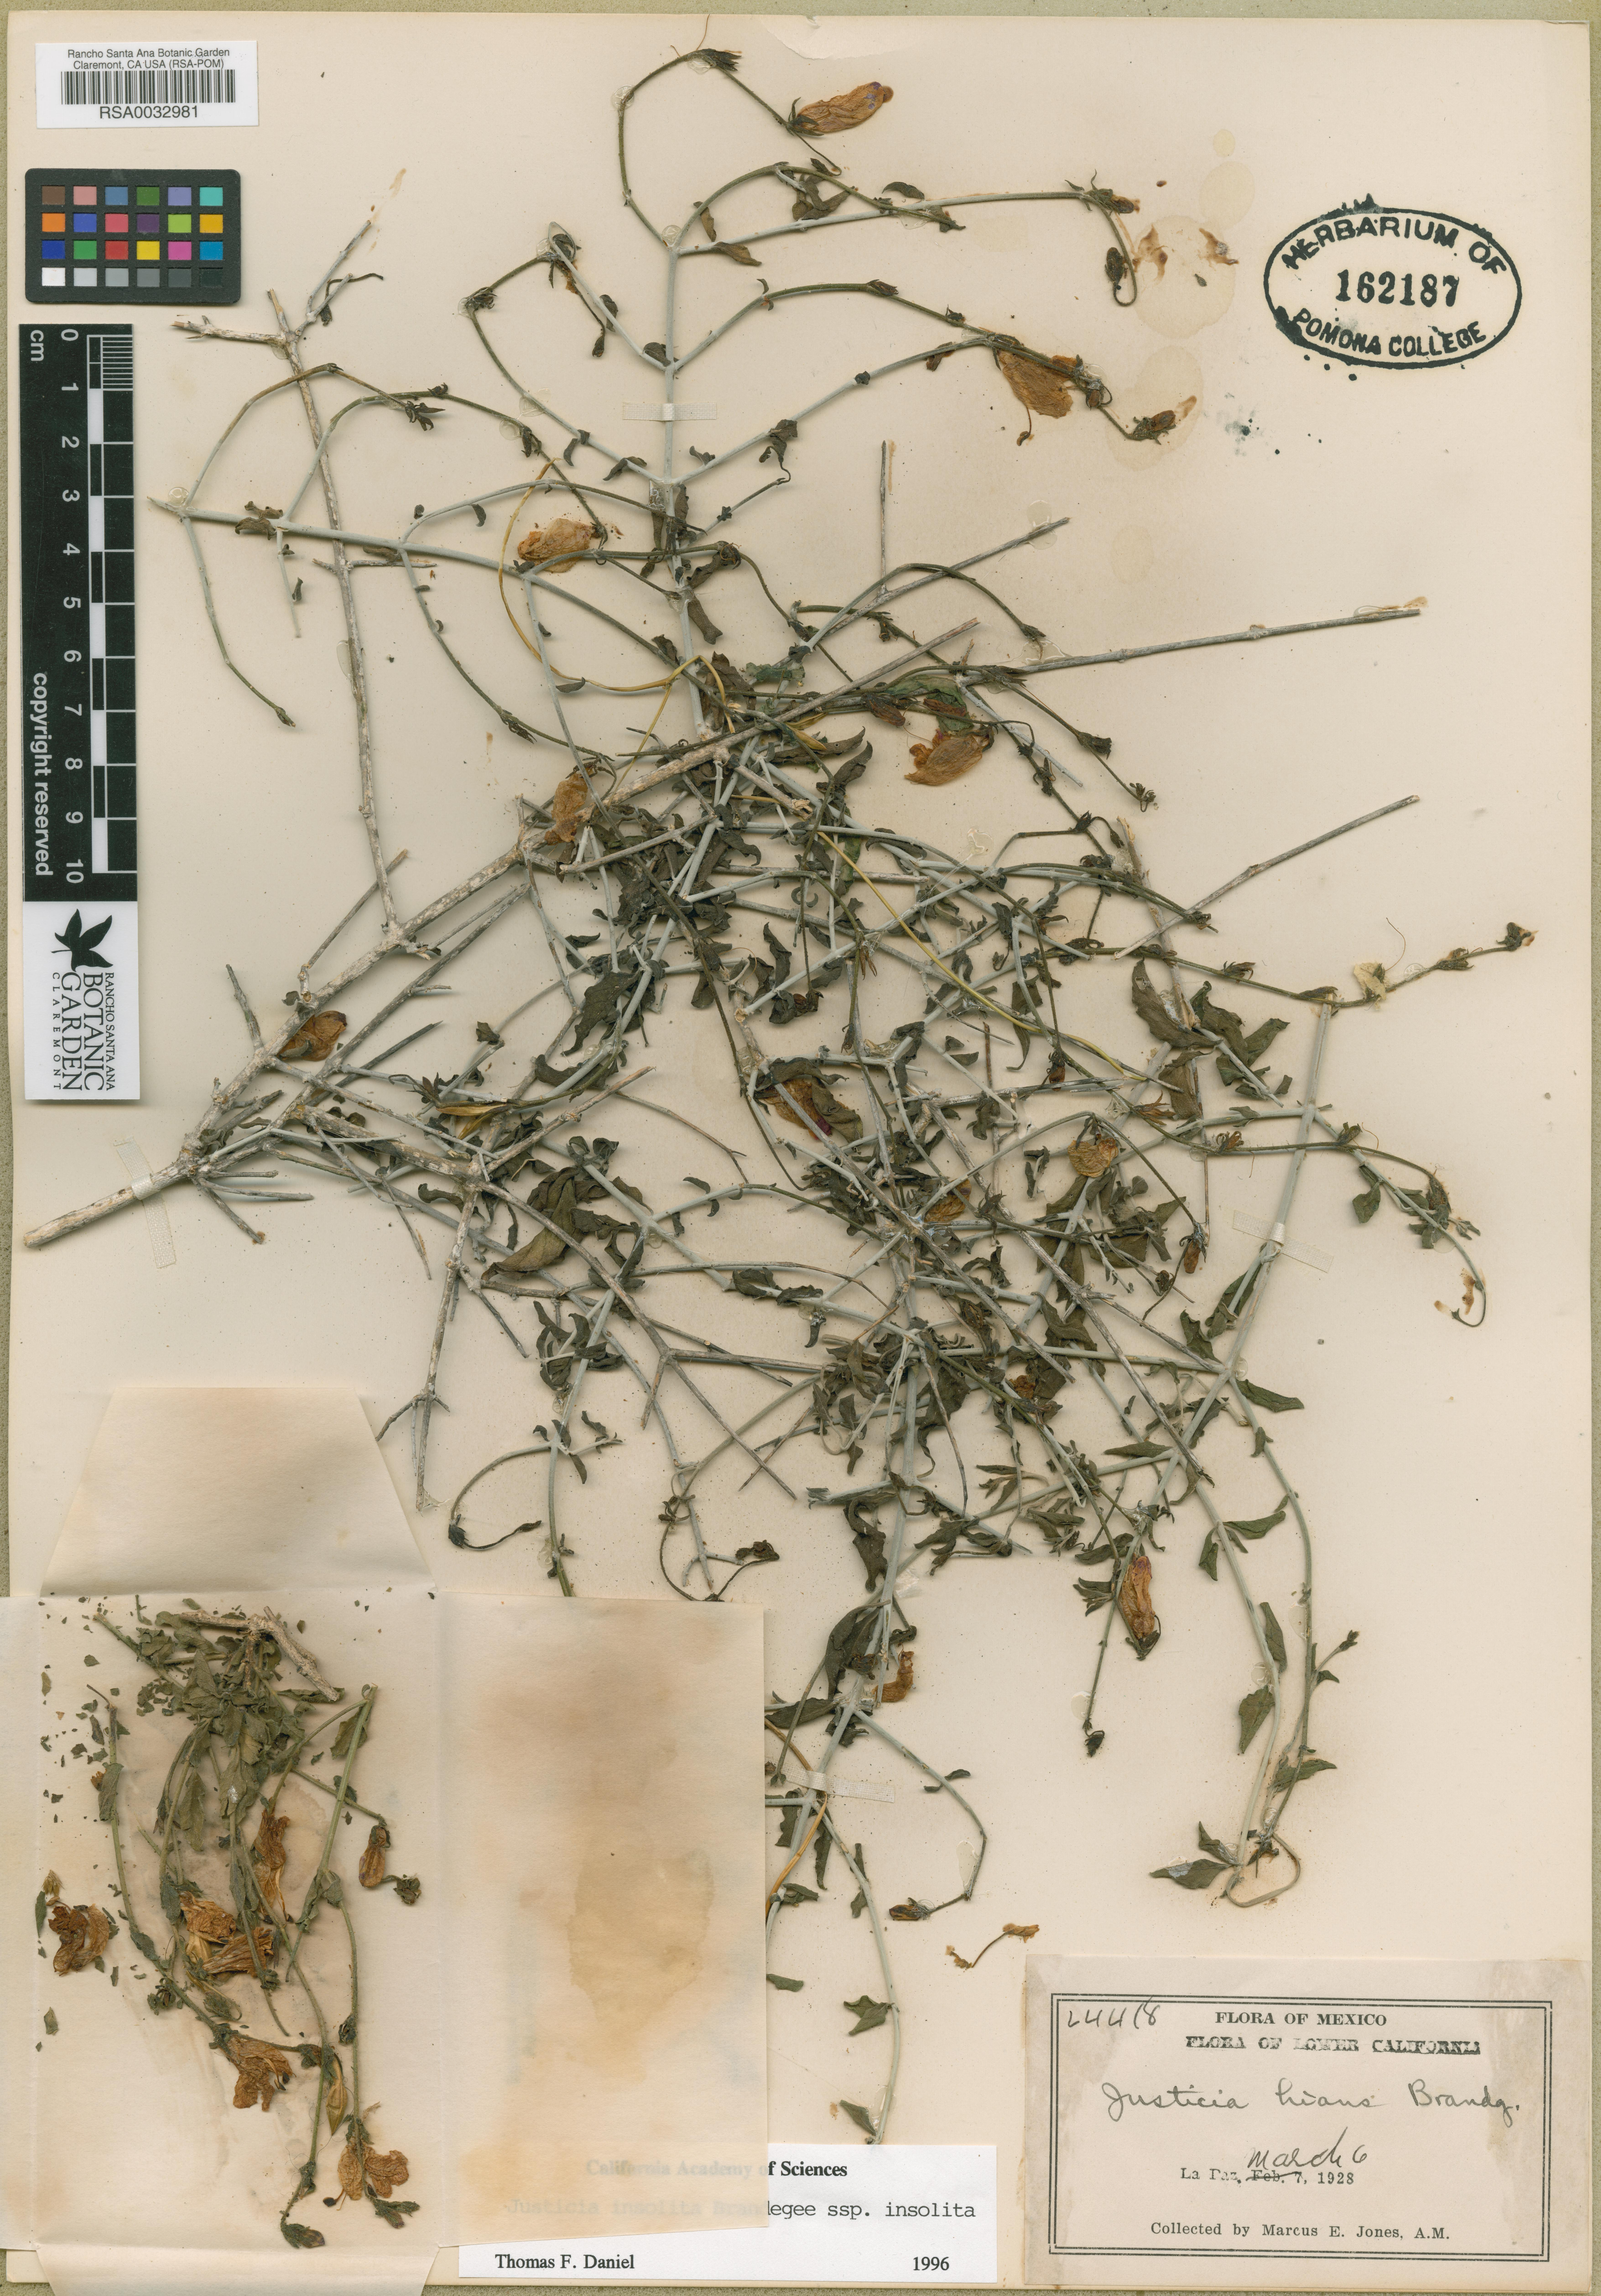 Justicia insolita subsp. tastensis image